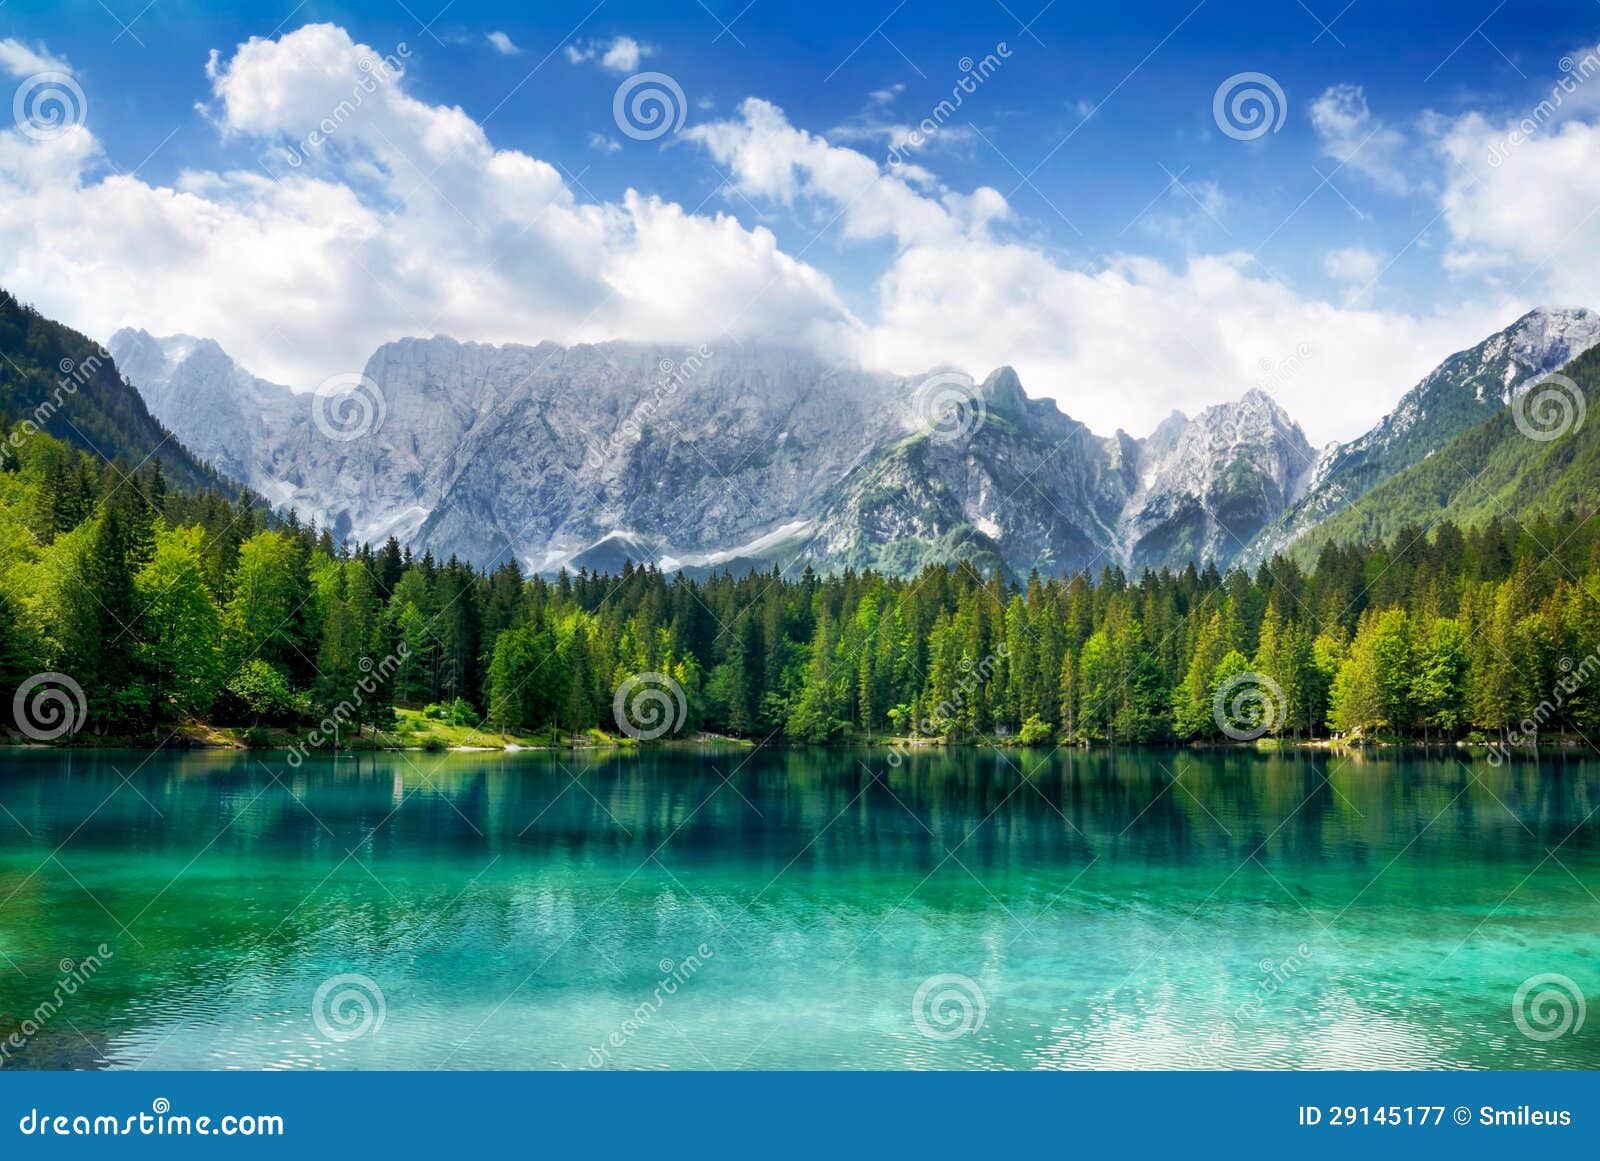 有山的美丽的湖在背景中库存图片 图片包括有湖边 山脉 公园 绿色 天空 清晰 横向 保存